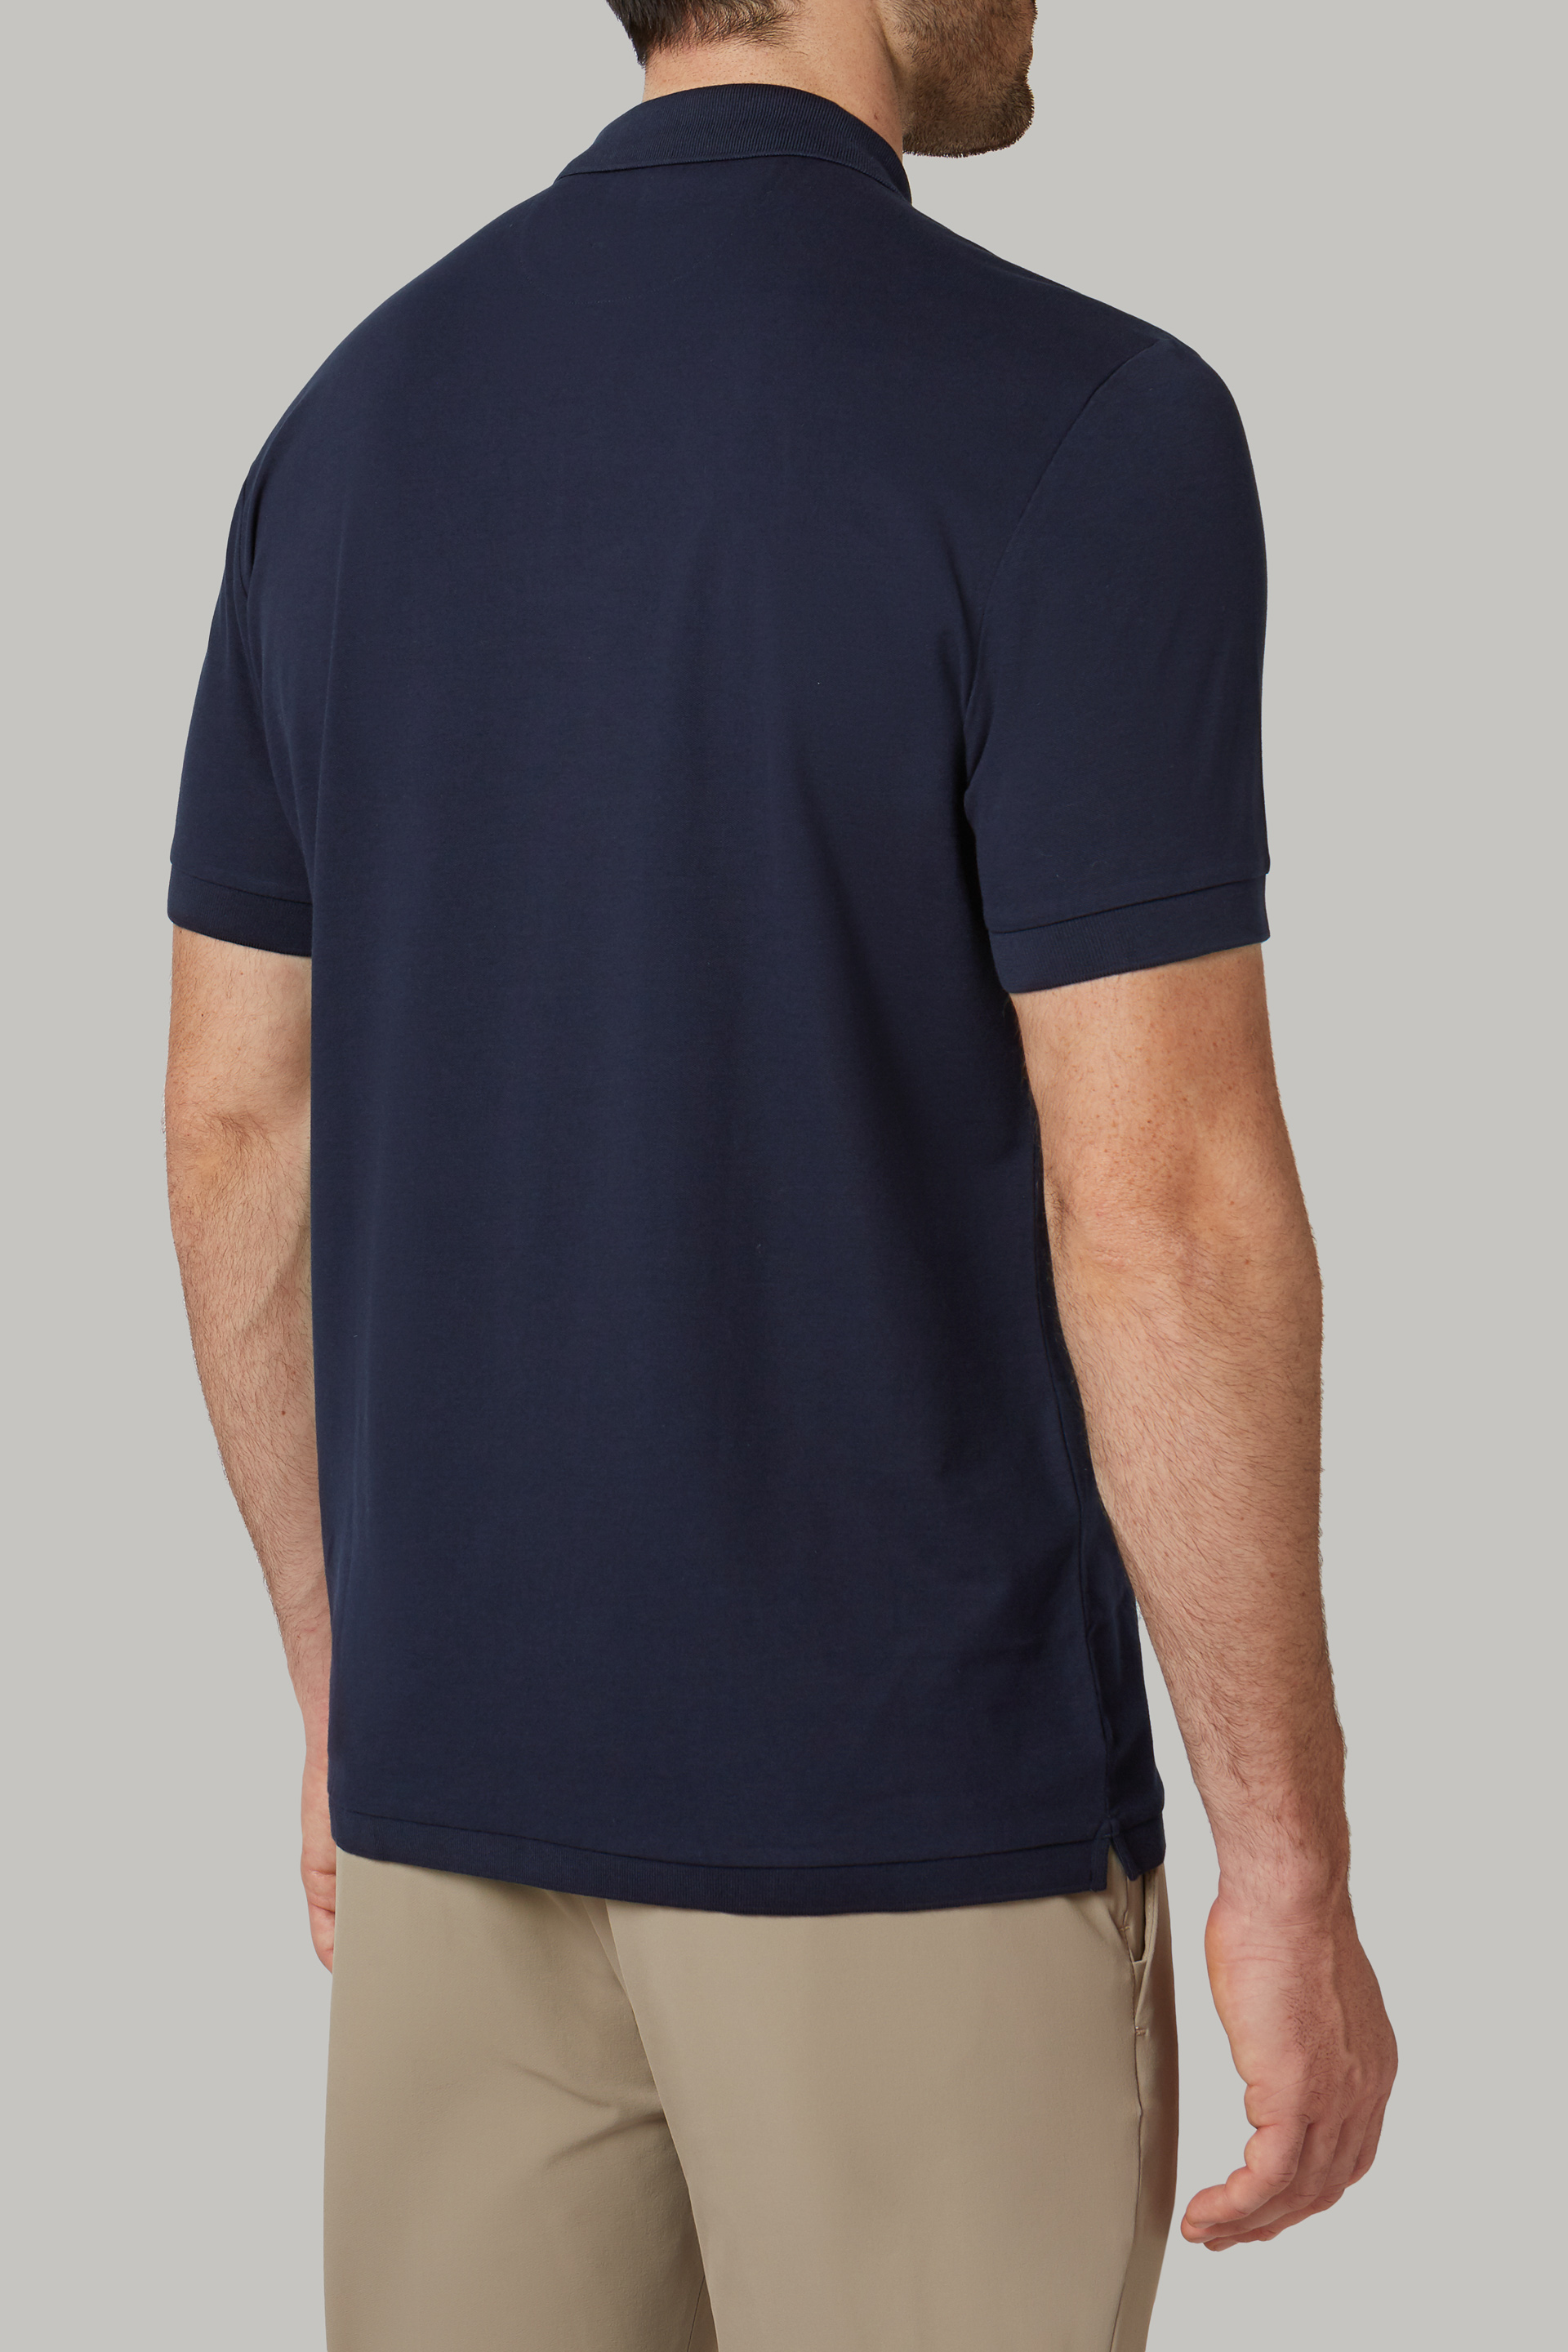 Men's Regular fit cotton and nylon piqué polo shirt | Boggi Milano